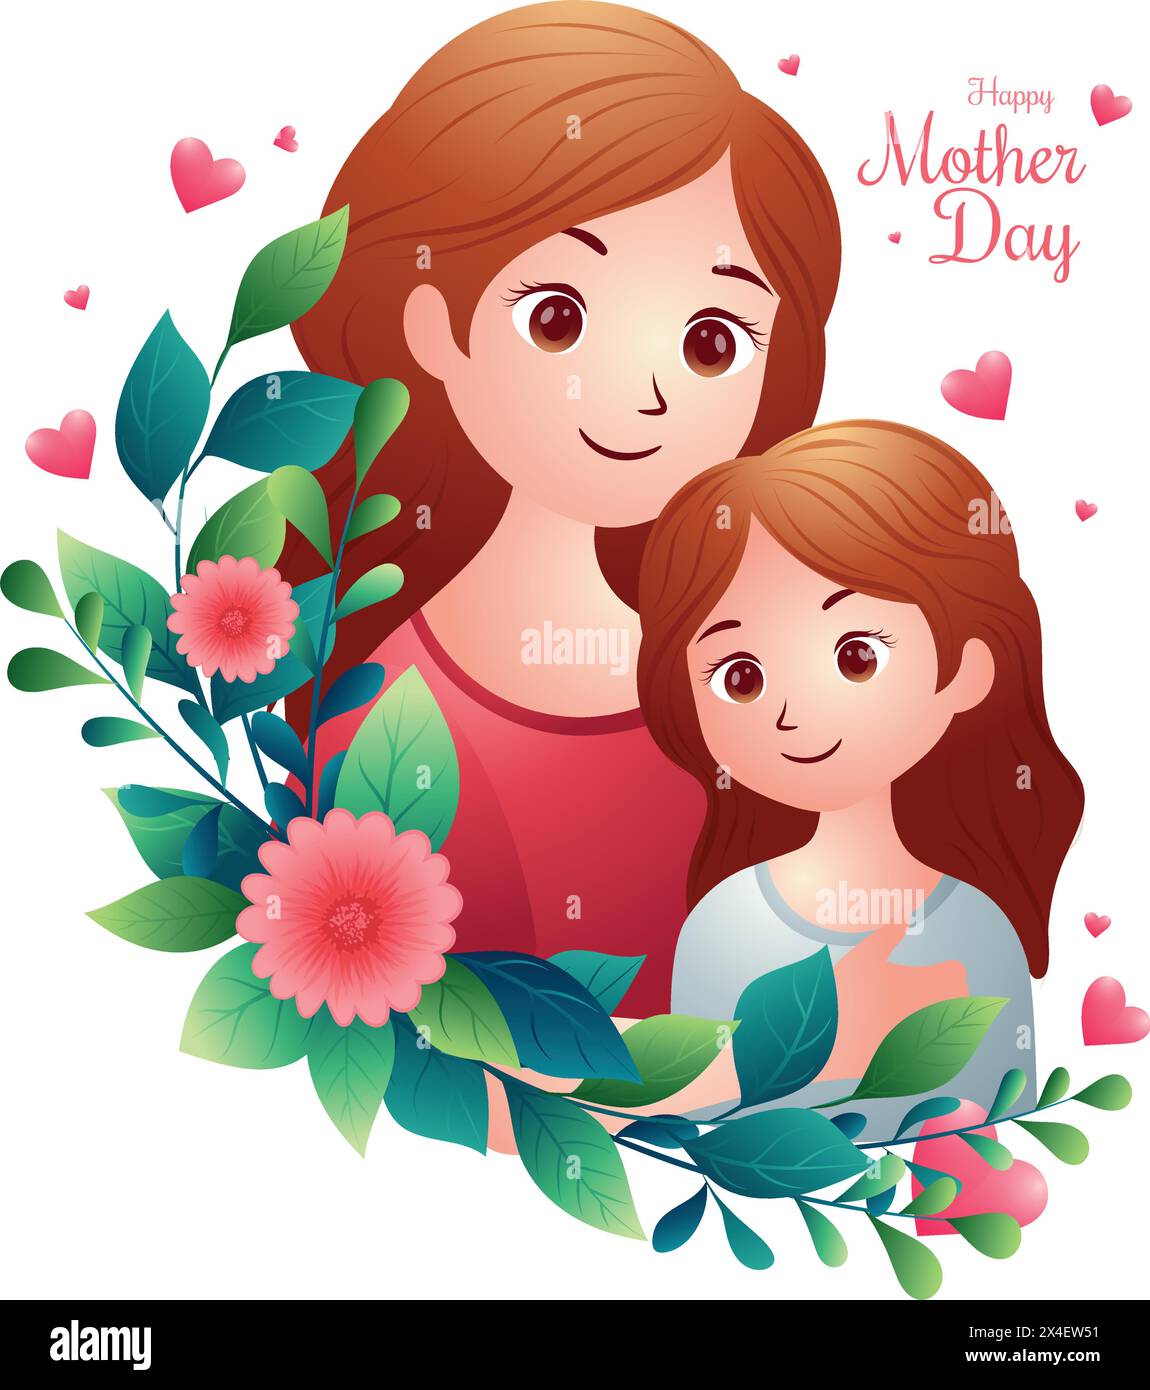 Icône ou symbole de fête des mères heureuse, maman heureuse avec illustration vectorielle fille bien-aimée Illustration de Vecteur